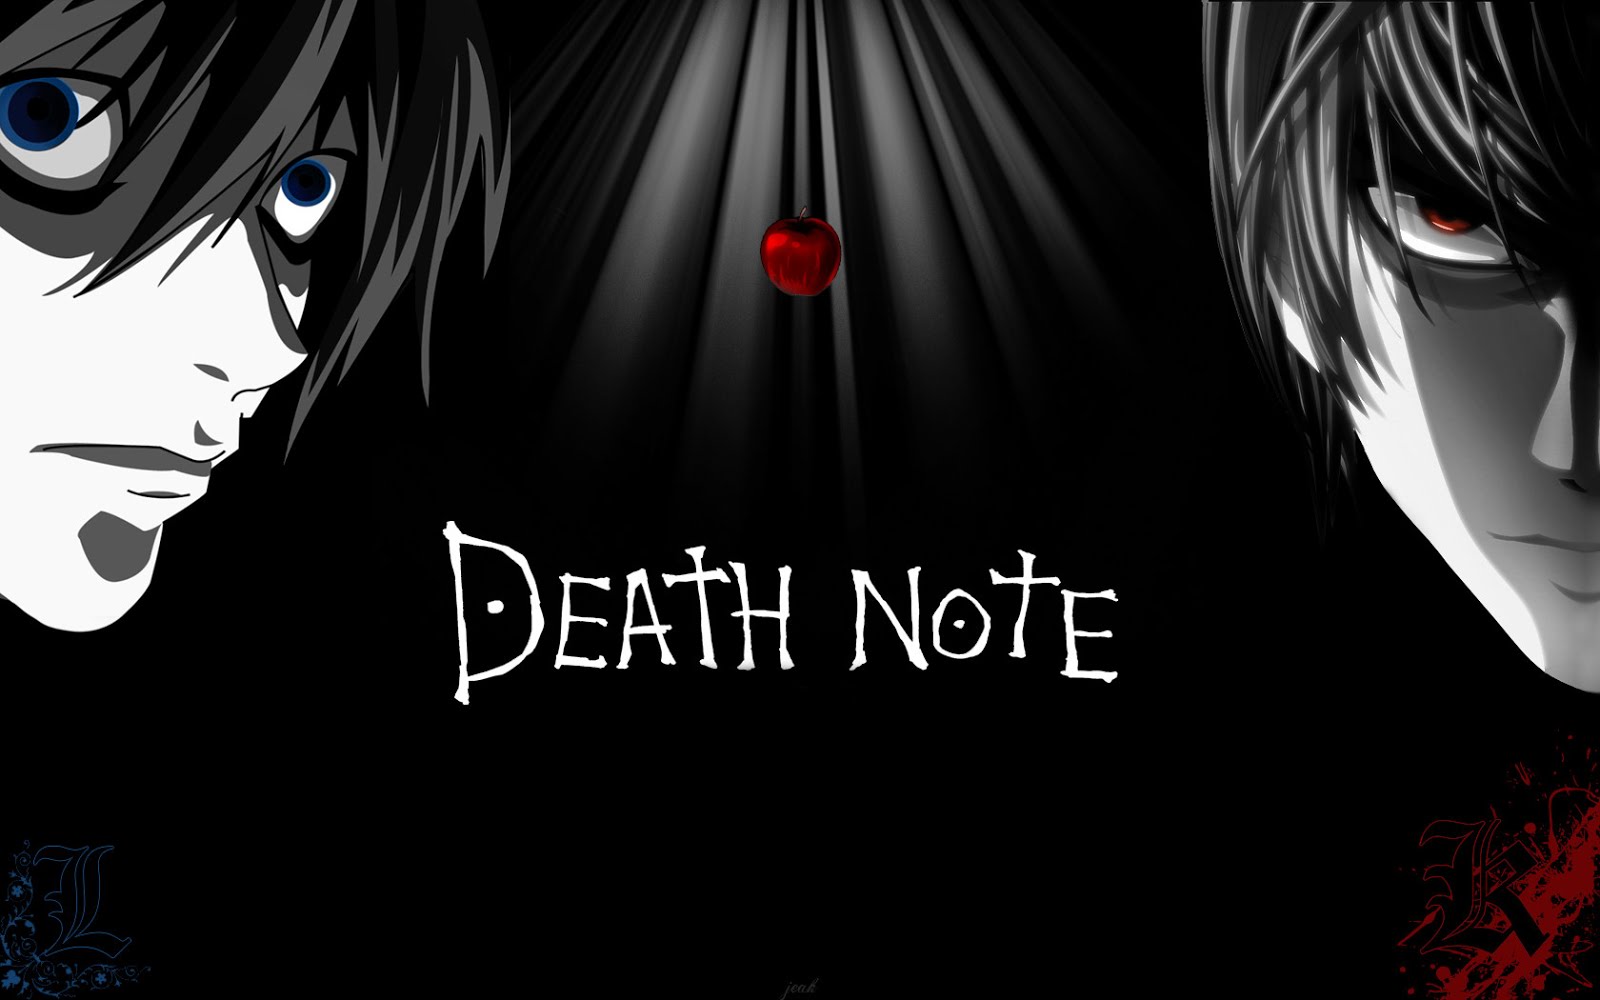 Death Note الحلقة 12 مترجم مشاهدة تحميل اون لاين تابع انمي